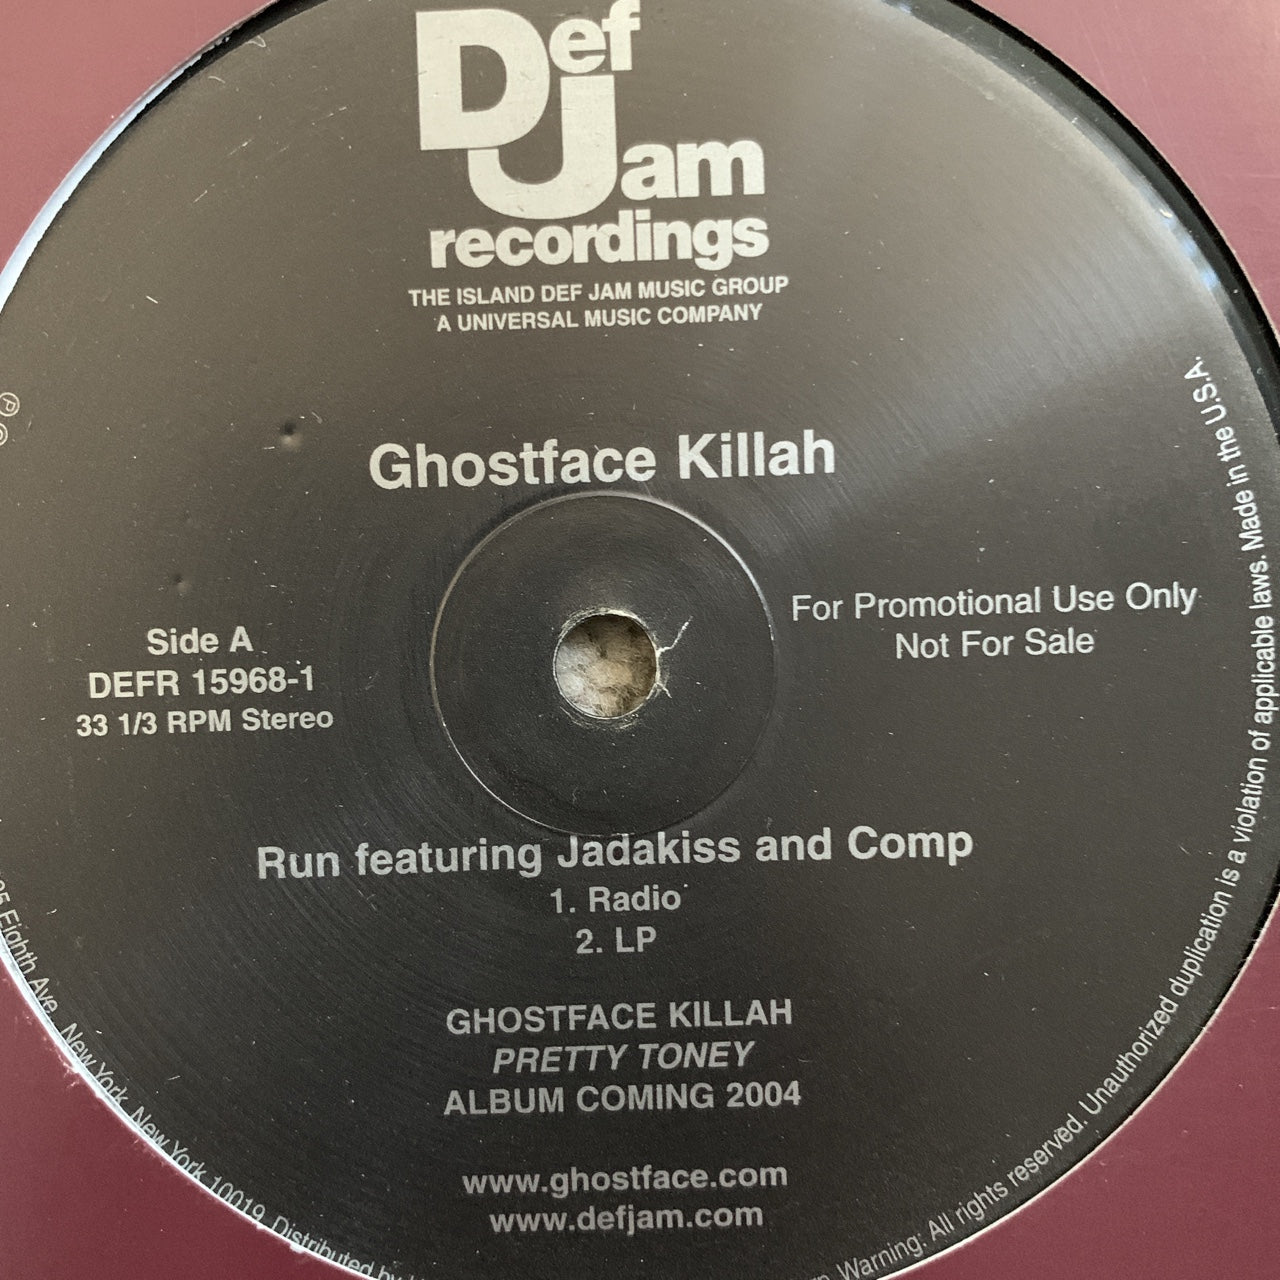 Ghostface Killah “Run” Feat Jadakiss